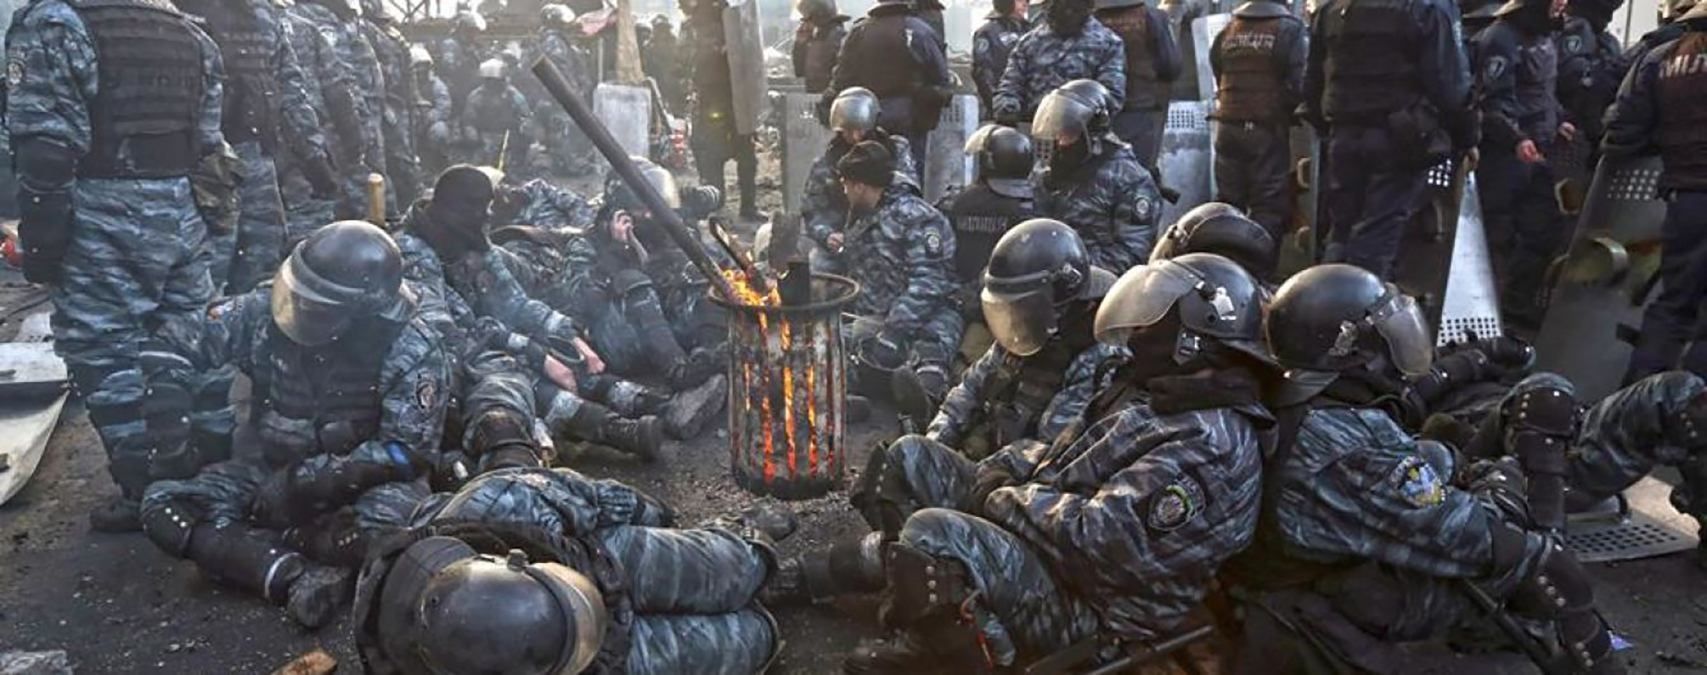 В суд направили еще один обвинительный акт по делу Майдана